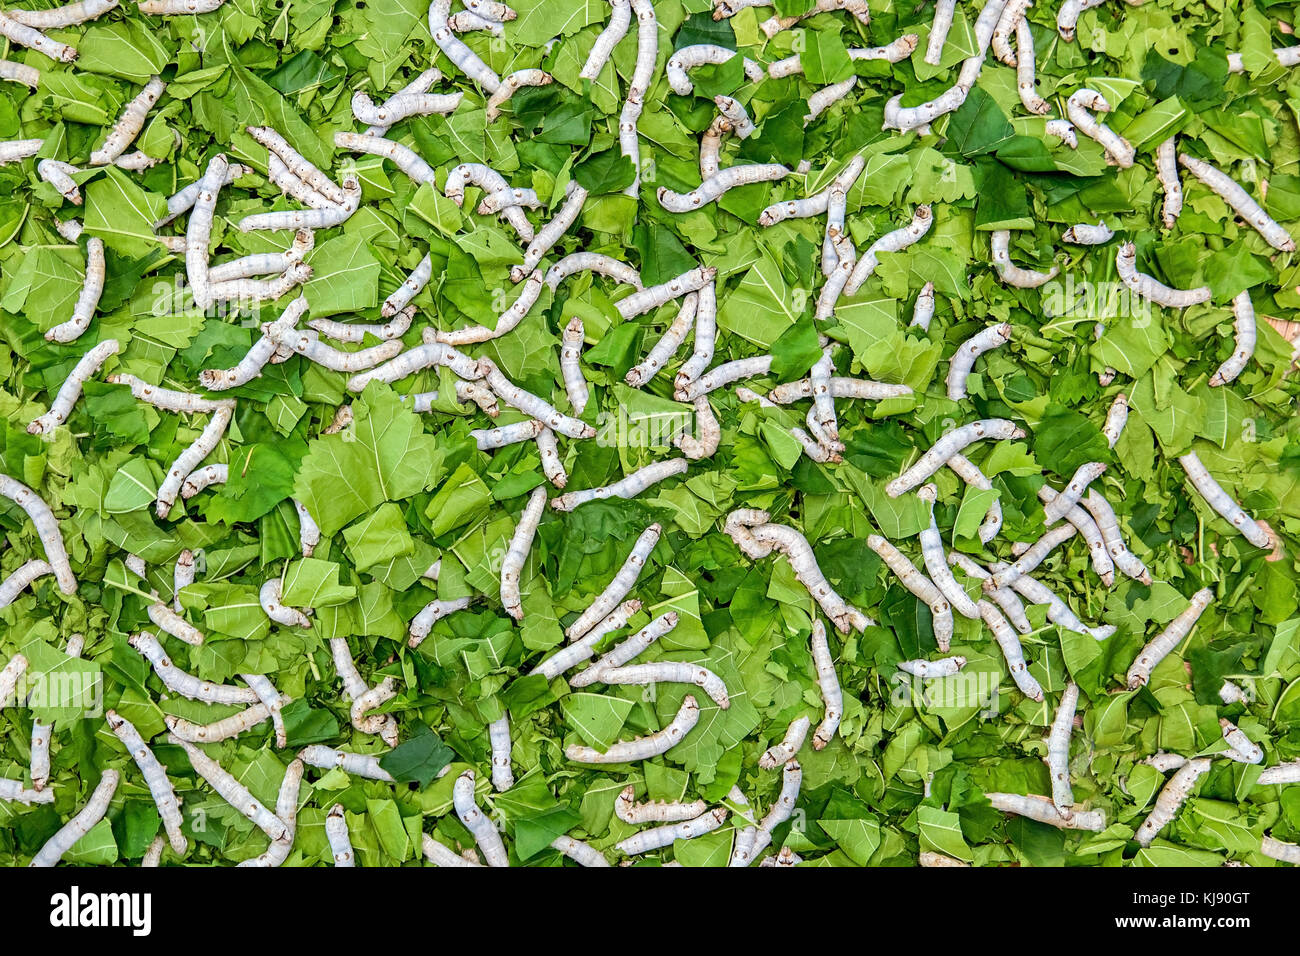 Viele Seidenraupen essen grüne Blätter. Raupen eines Silkworm Blatt eines Mulberry essen. Stockfoto